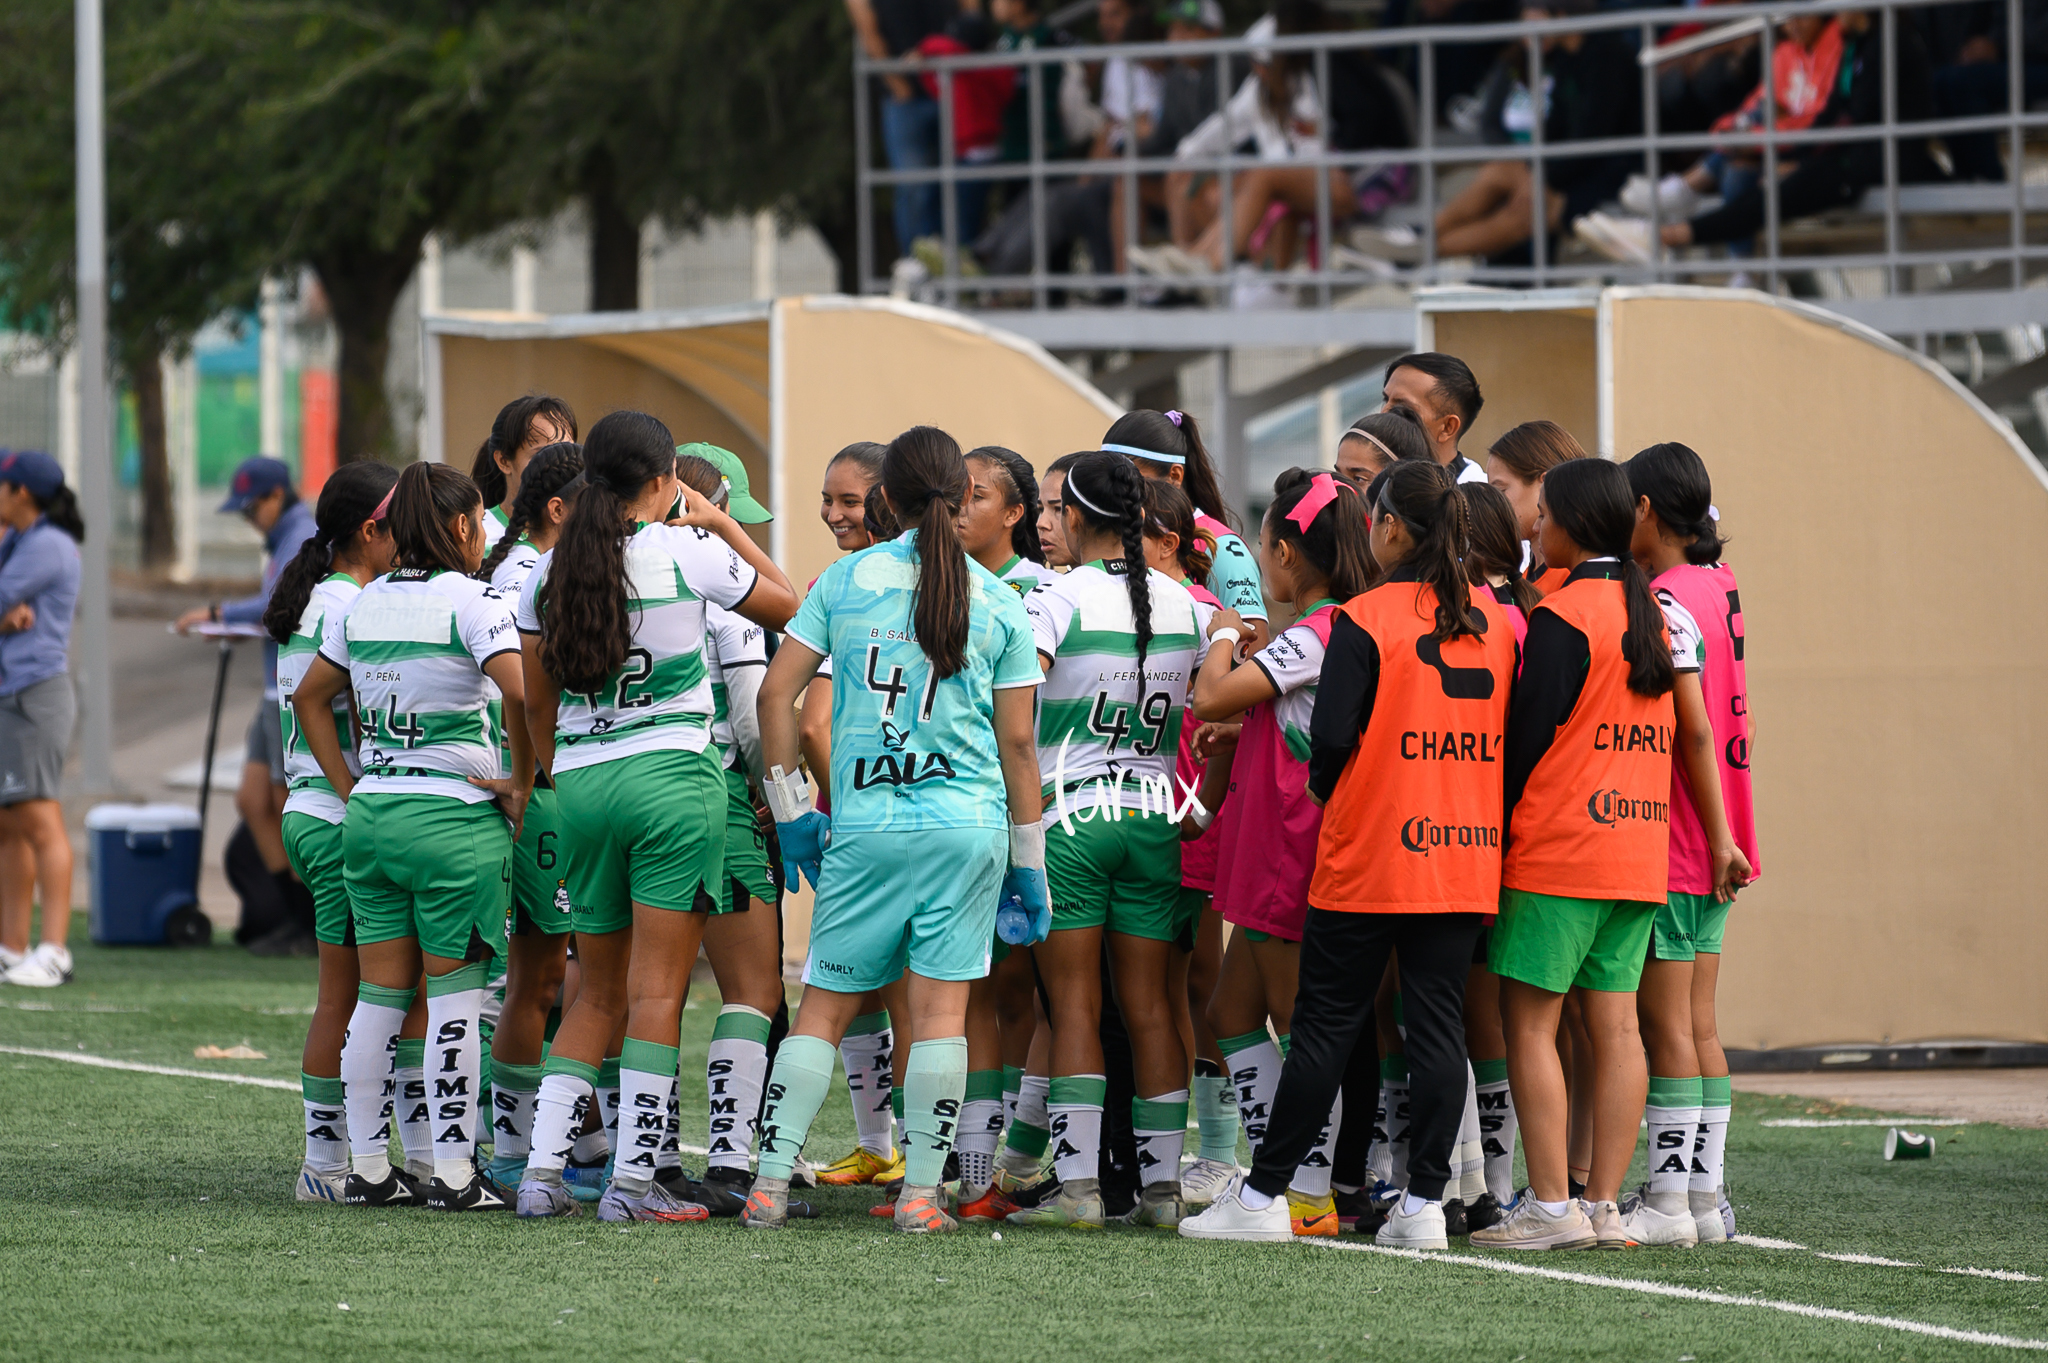 Santos Laguna vs Atlético de San Luis femenil sub 18